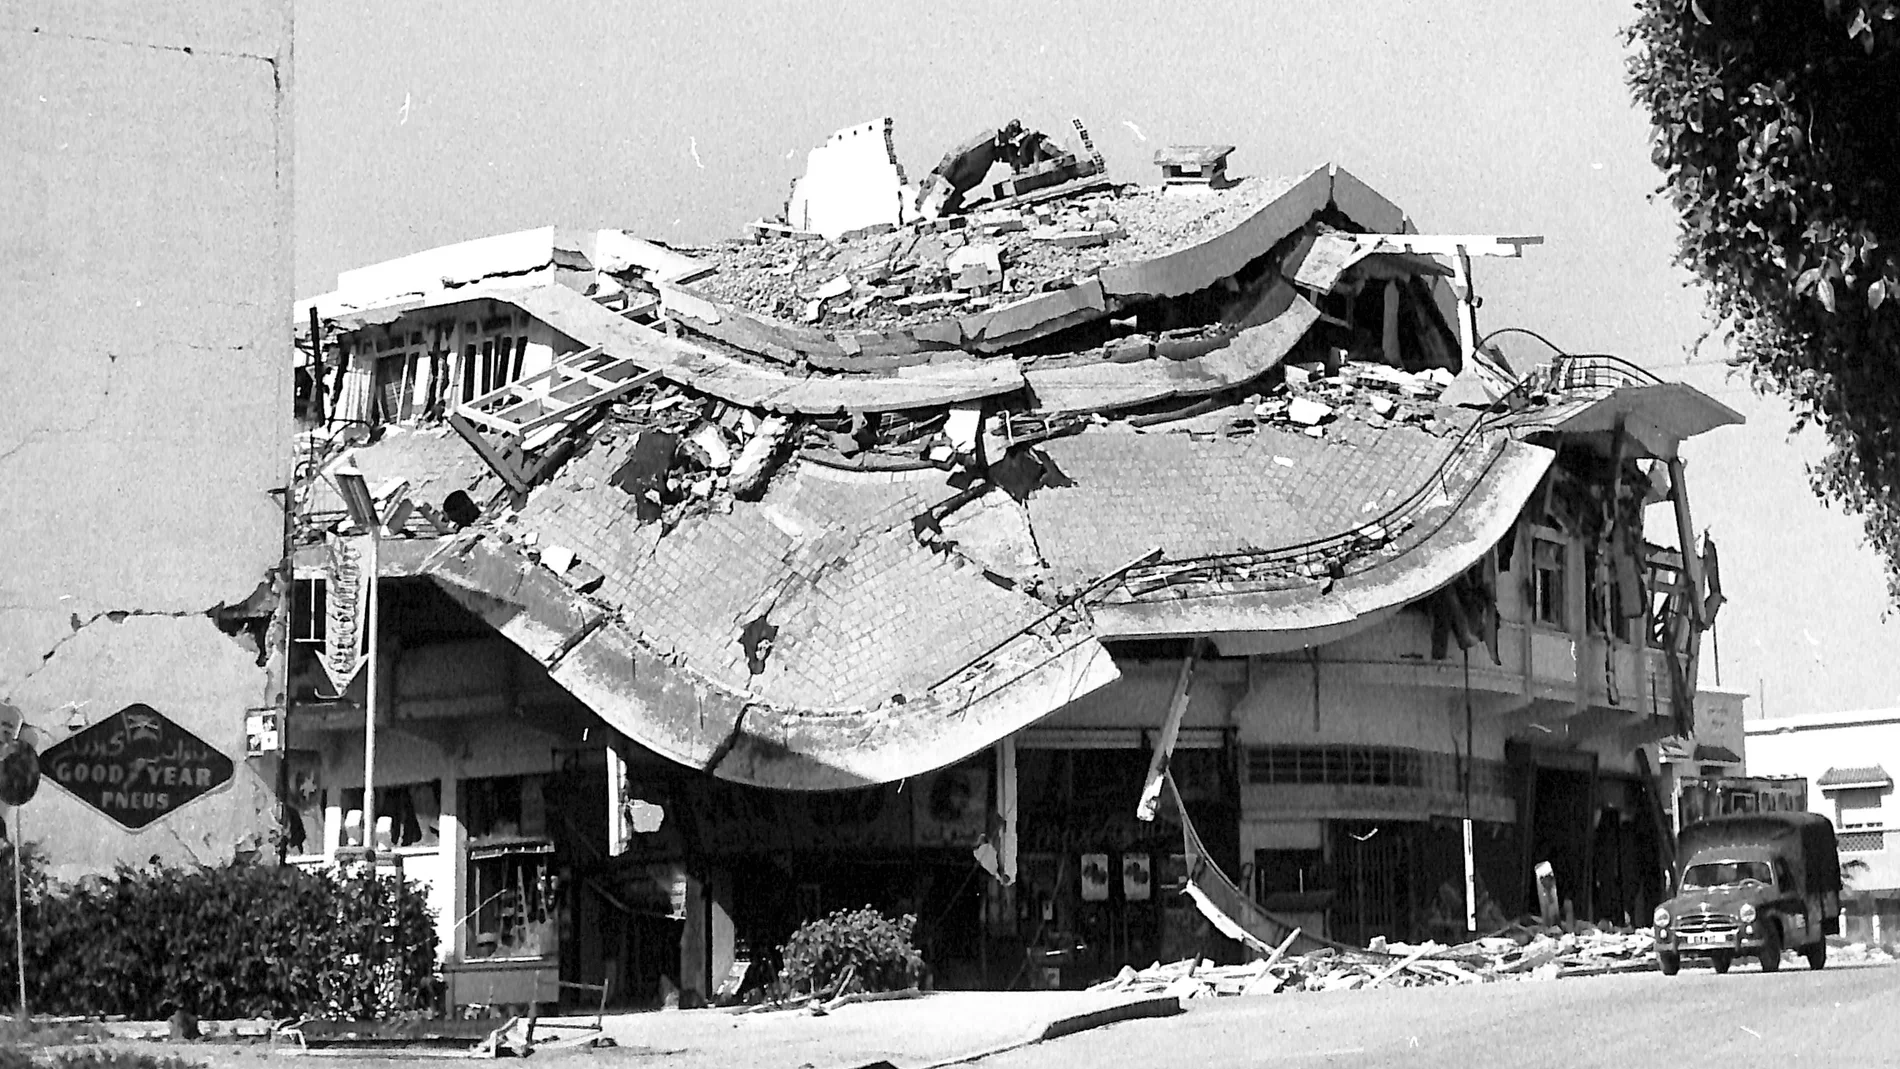 El terremoto de Marruecos de 1960 destrozó la mayor parte de los edificios de Agadir